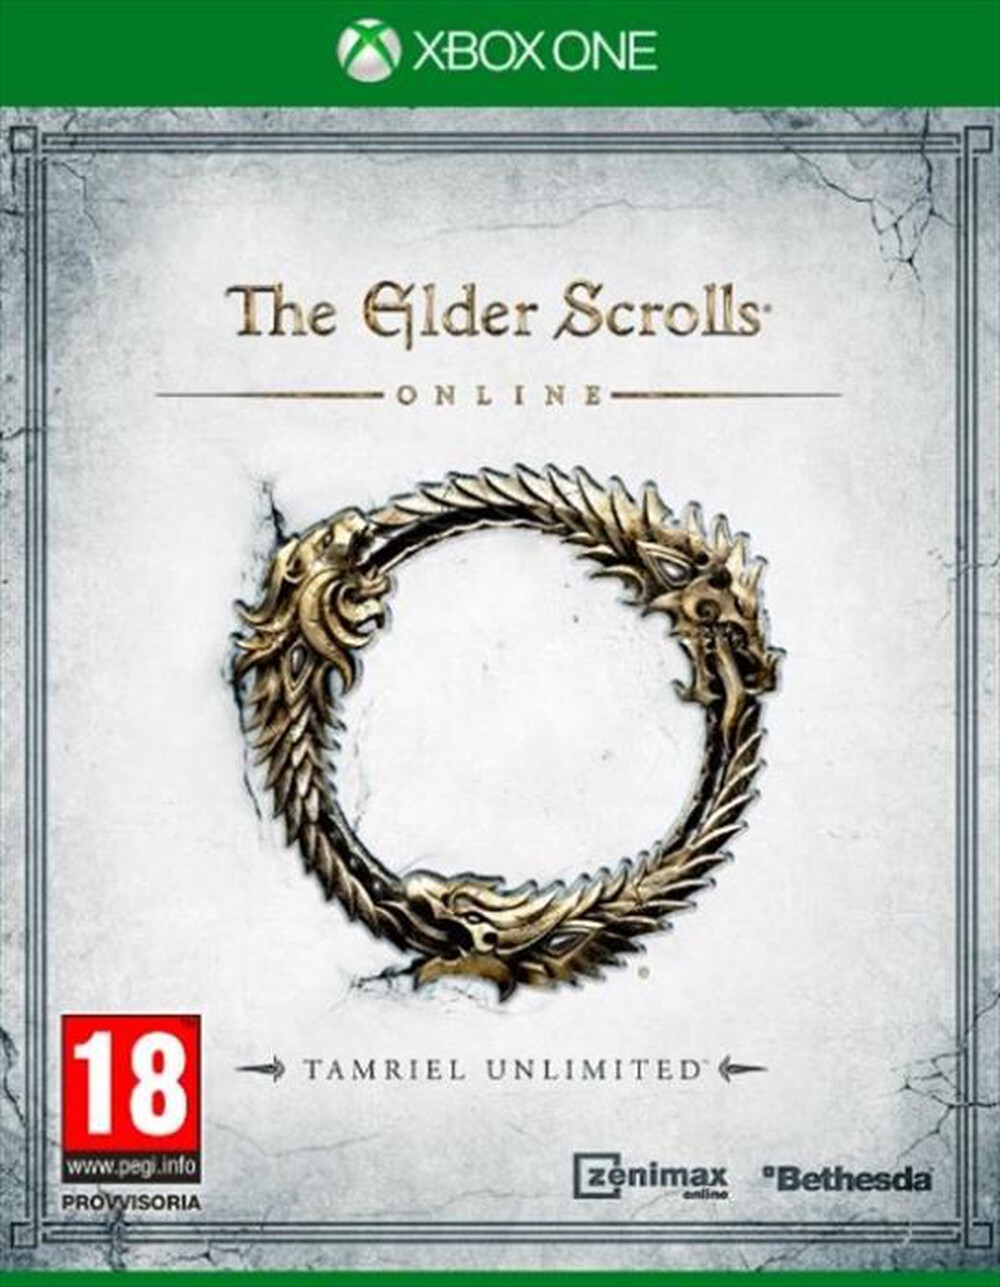 "KOCH MEDIA - The Elder Scrolls Online - Tamriel Unlimited XOne - "